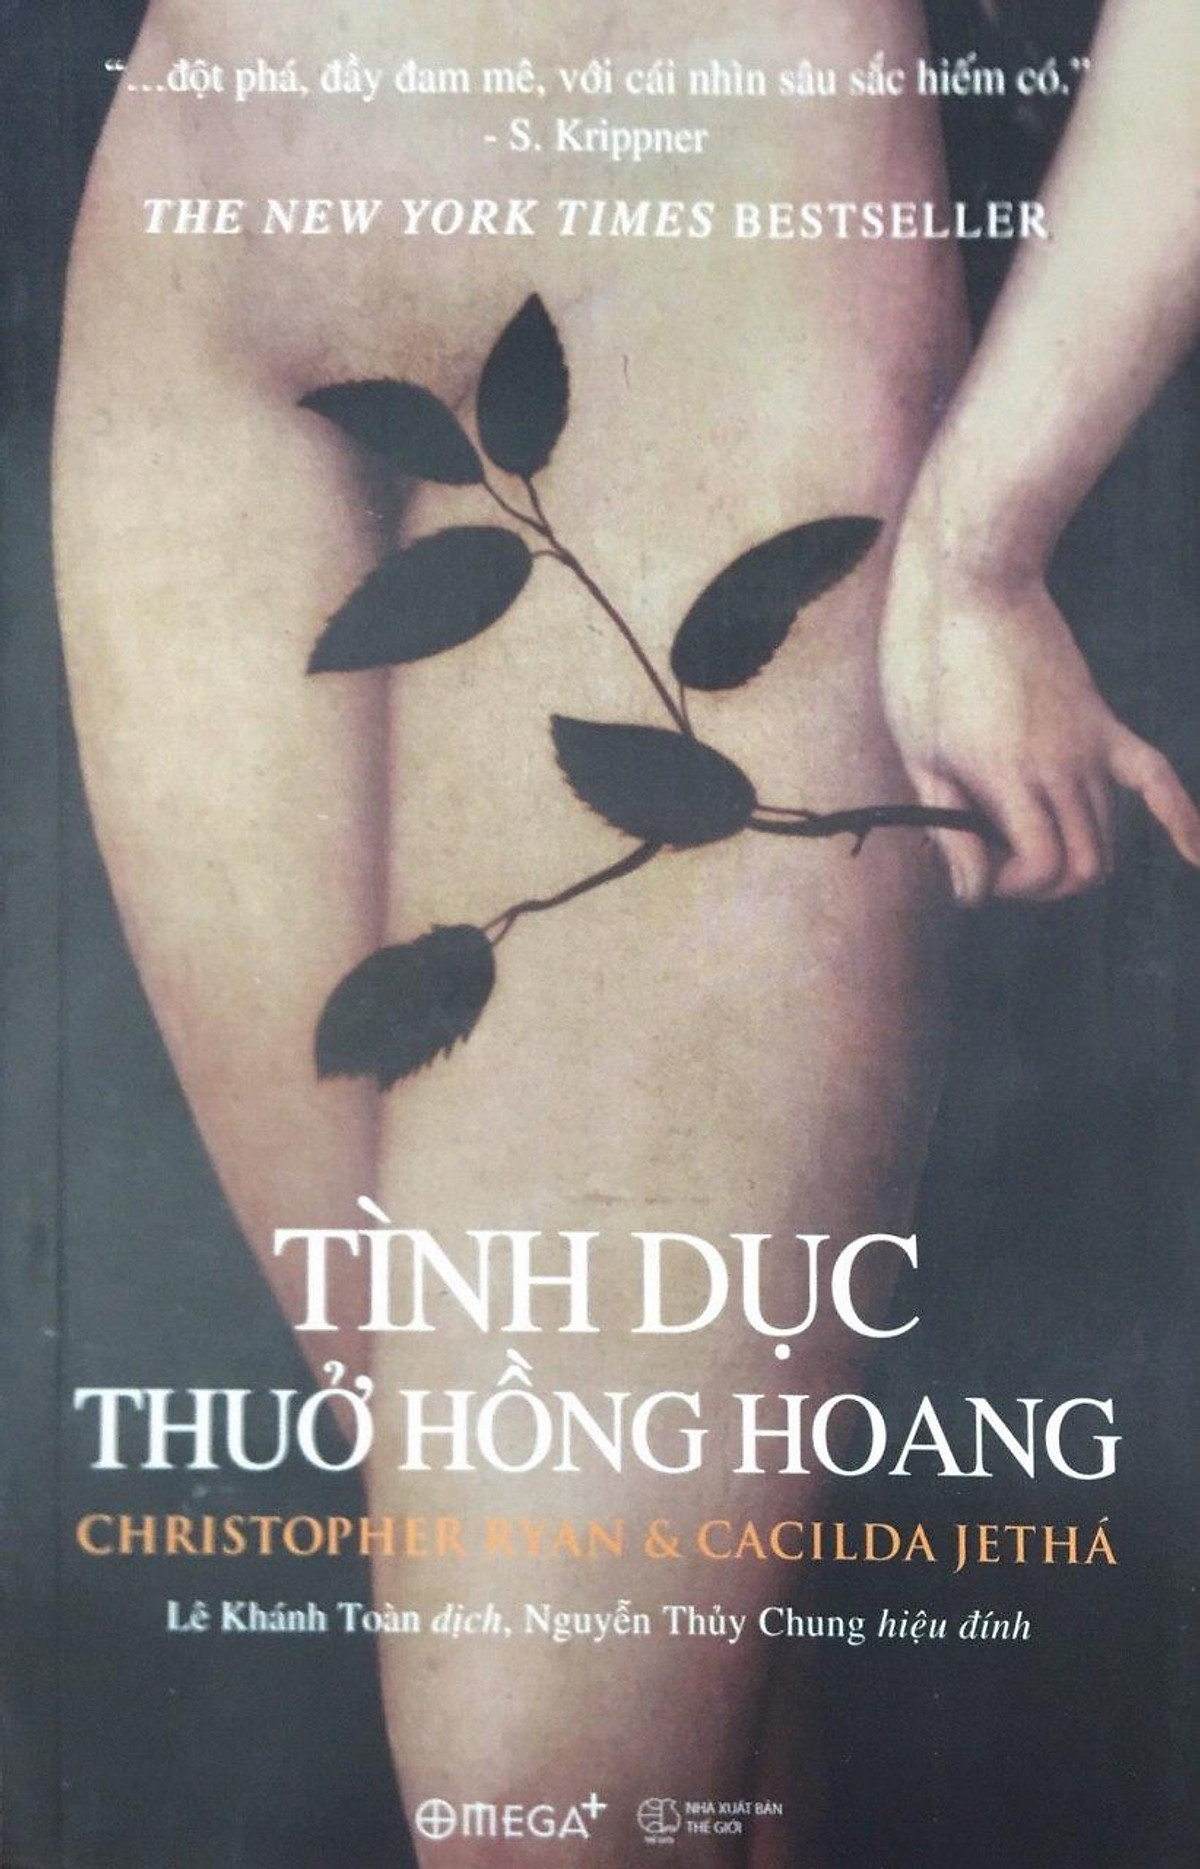 Combo 2 cuốn sách: SiSu - Vượt Qua Tất Cả + Tình Dục Thủa Hồng Hoang